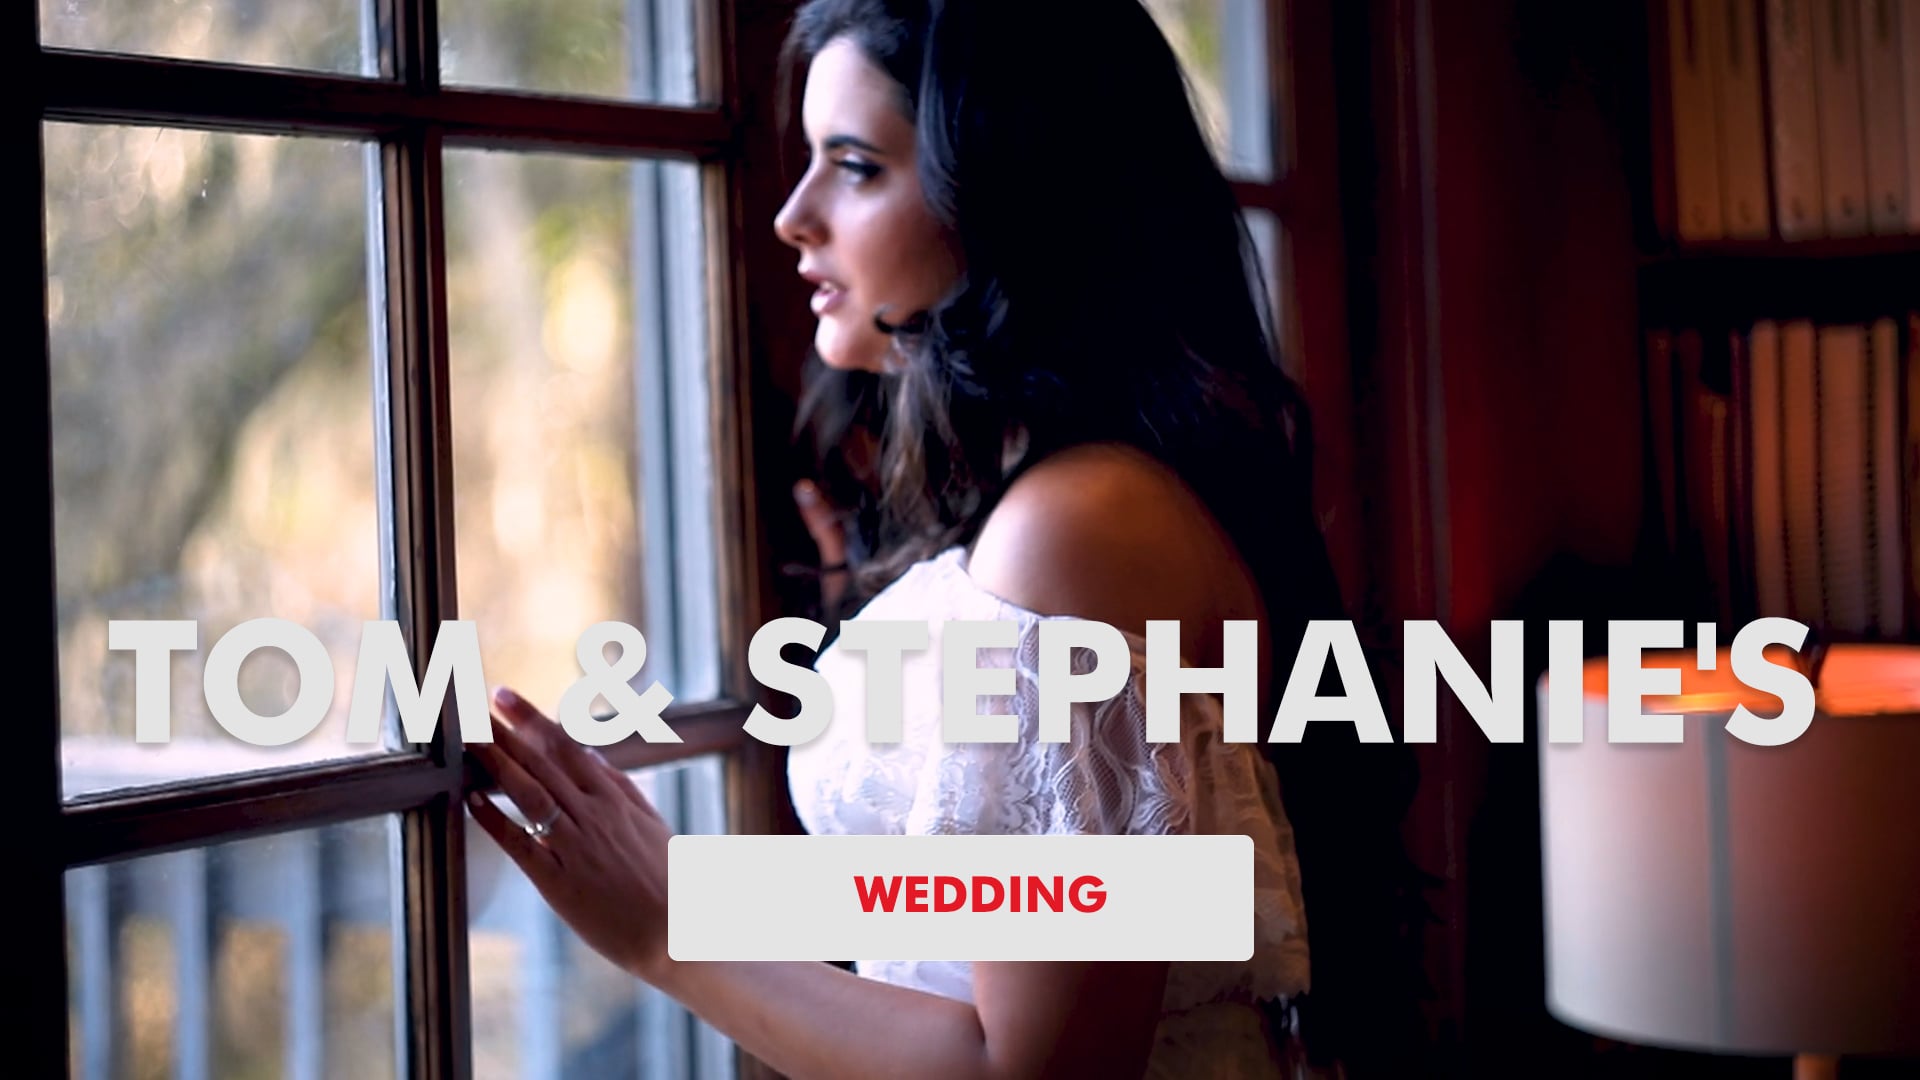 Tom & Stephanie's Wedding